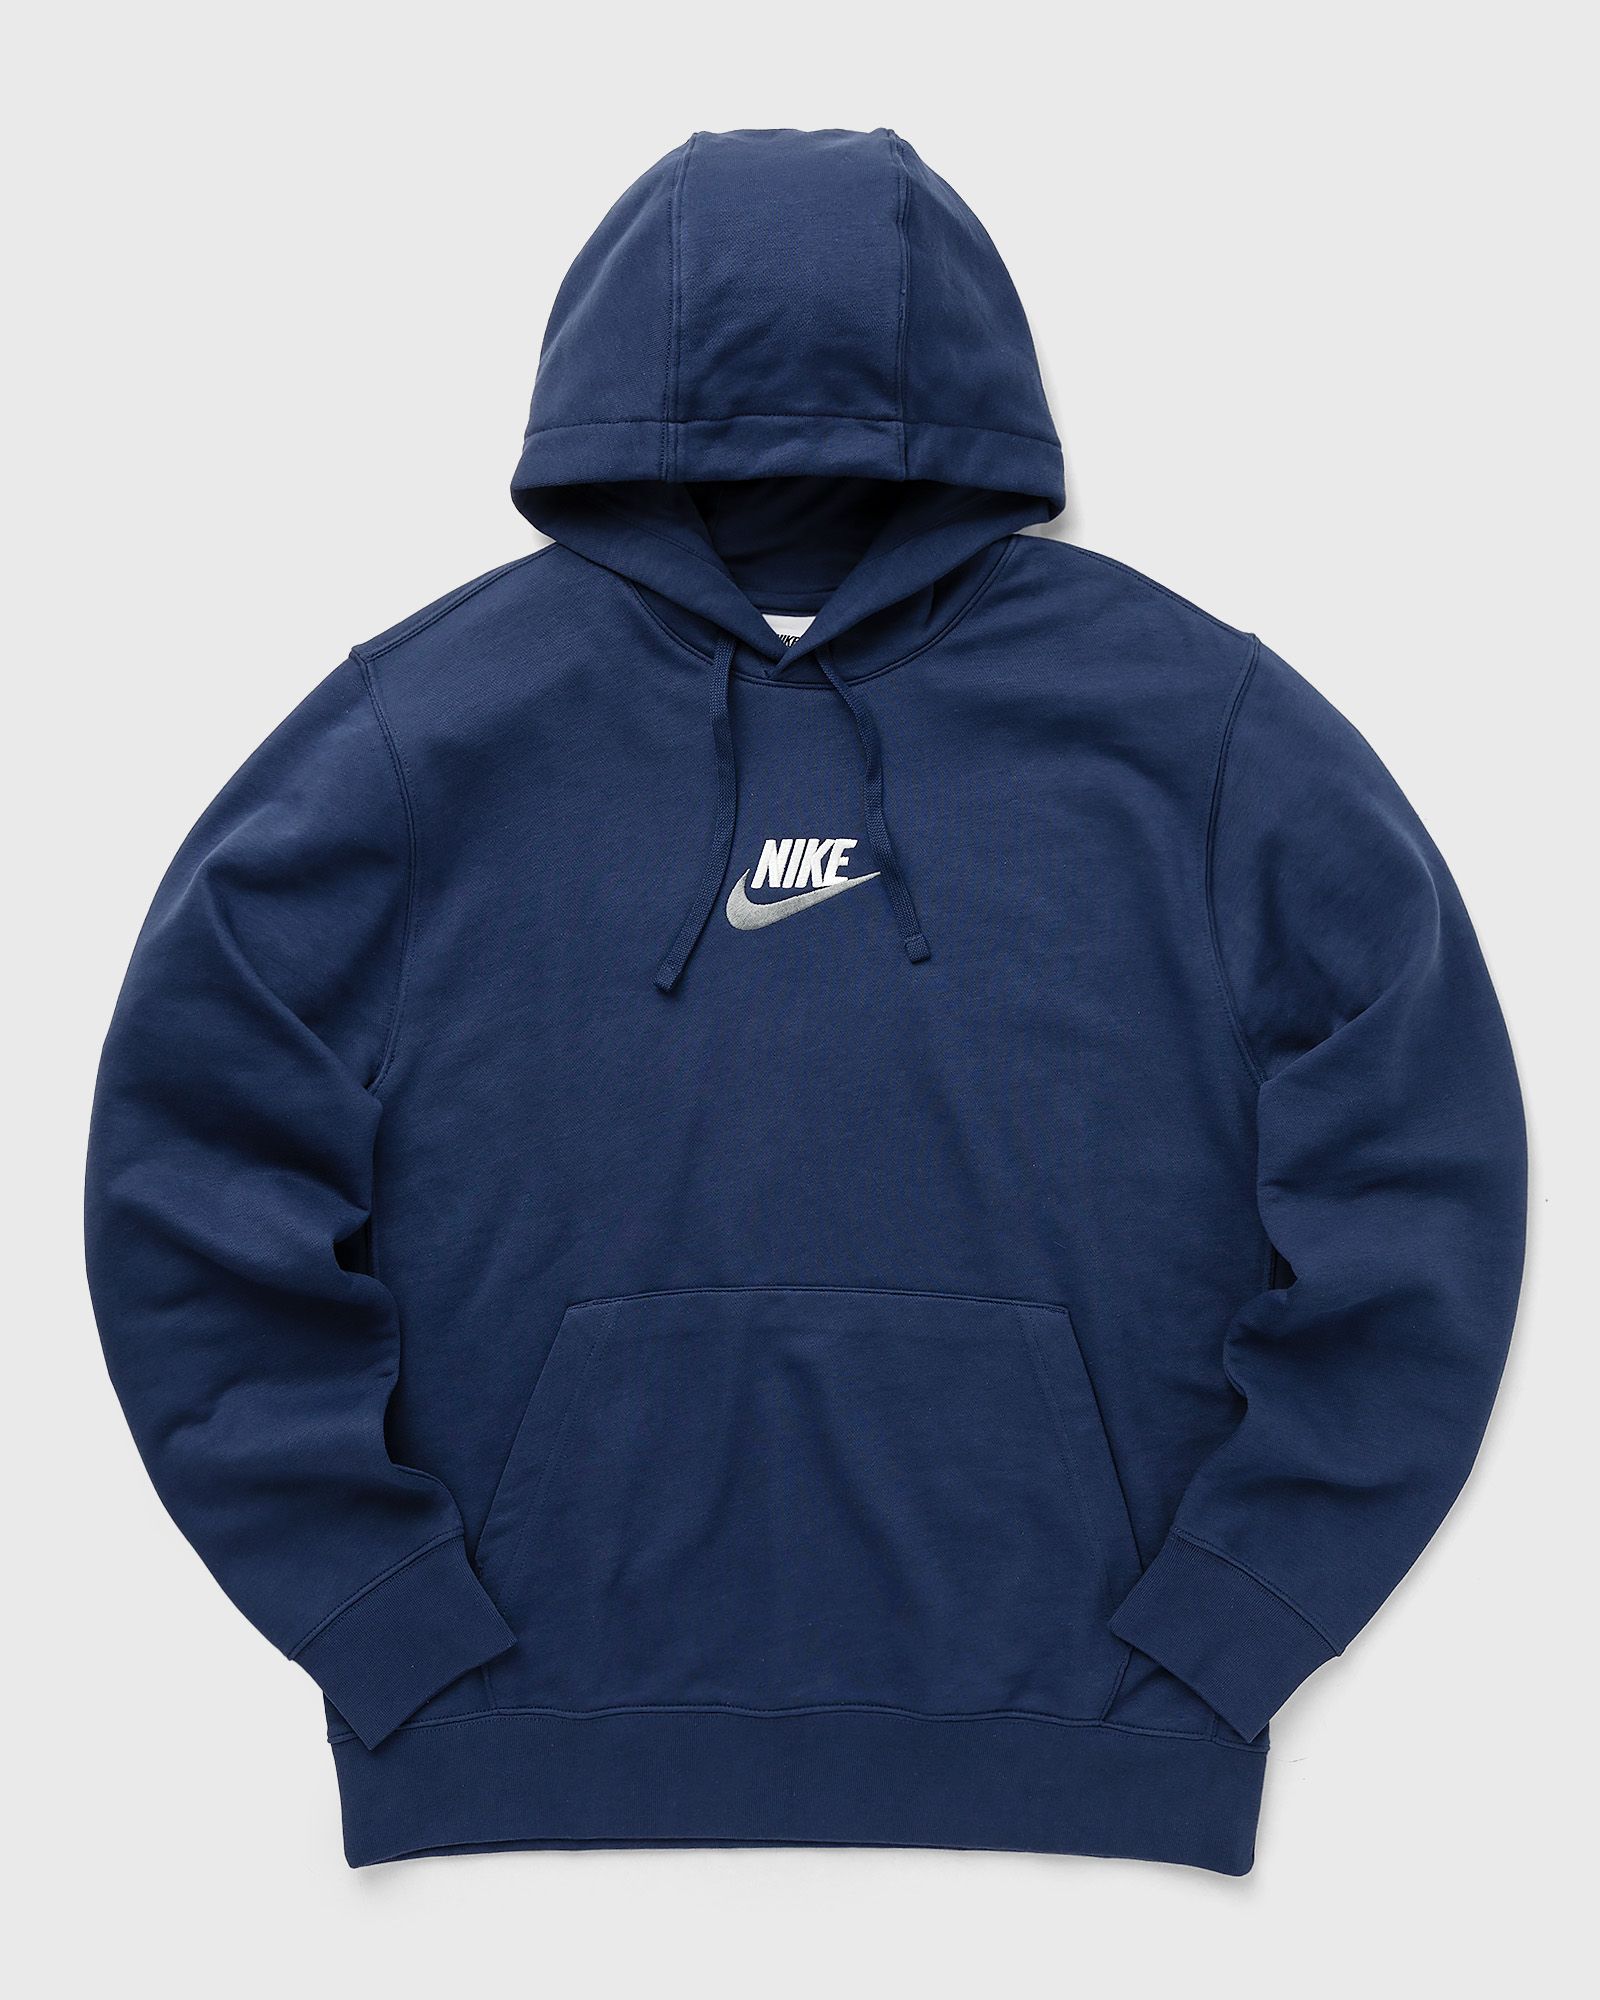 Nike - club french terry hoodie men hoodies blue in größe:l